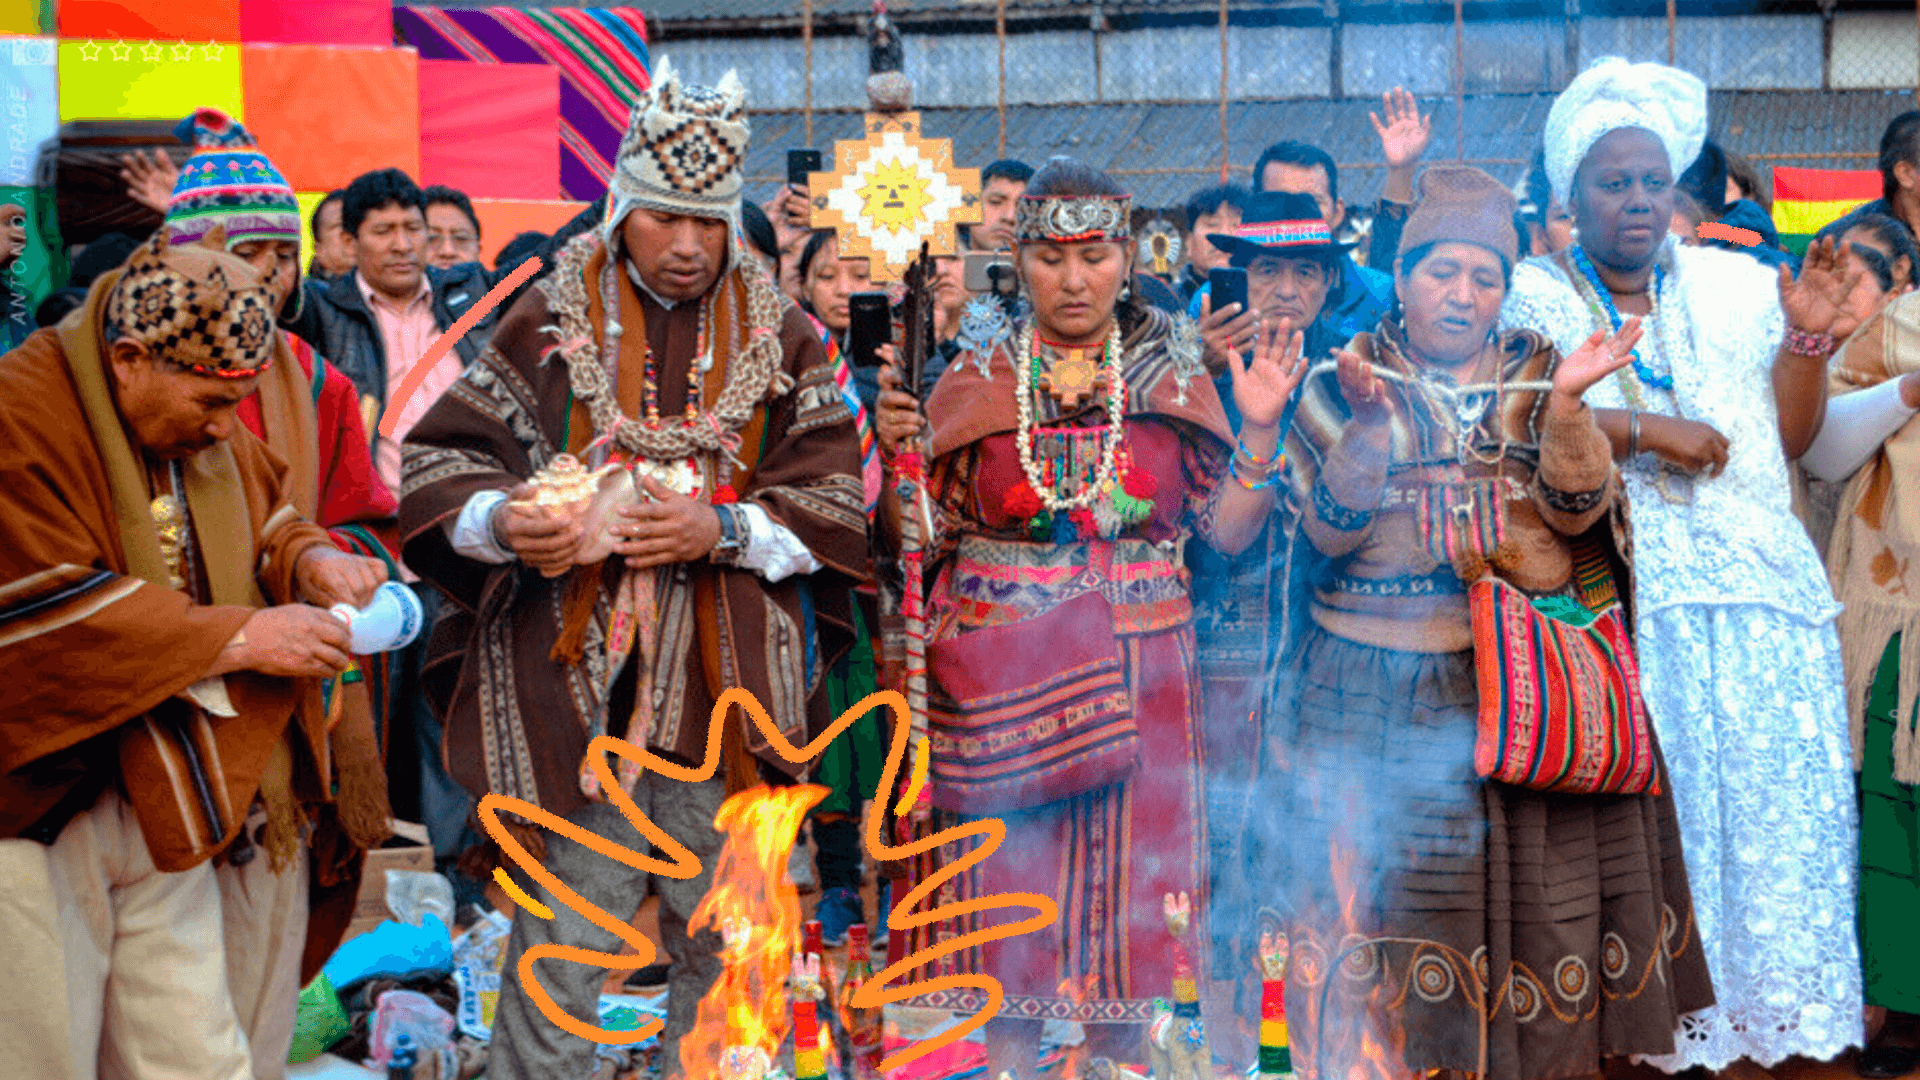 Povos indígenas e africanos celebram festas juninas decoloniais ao redor de uma fogueira.